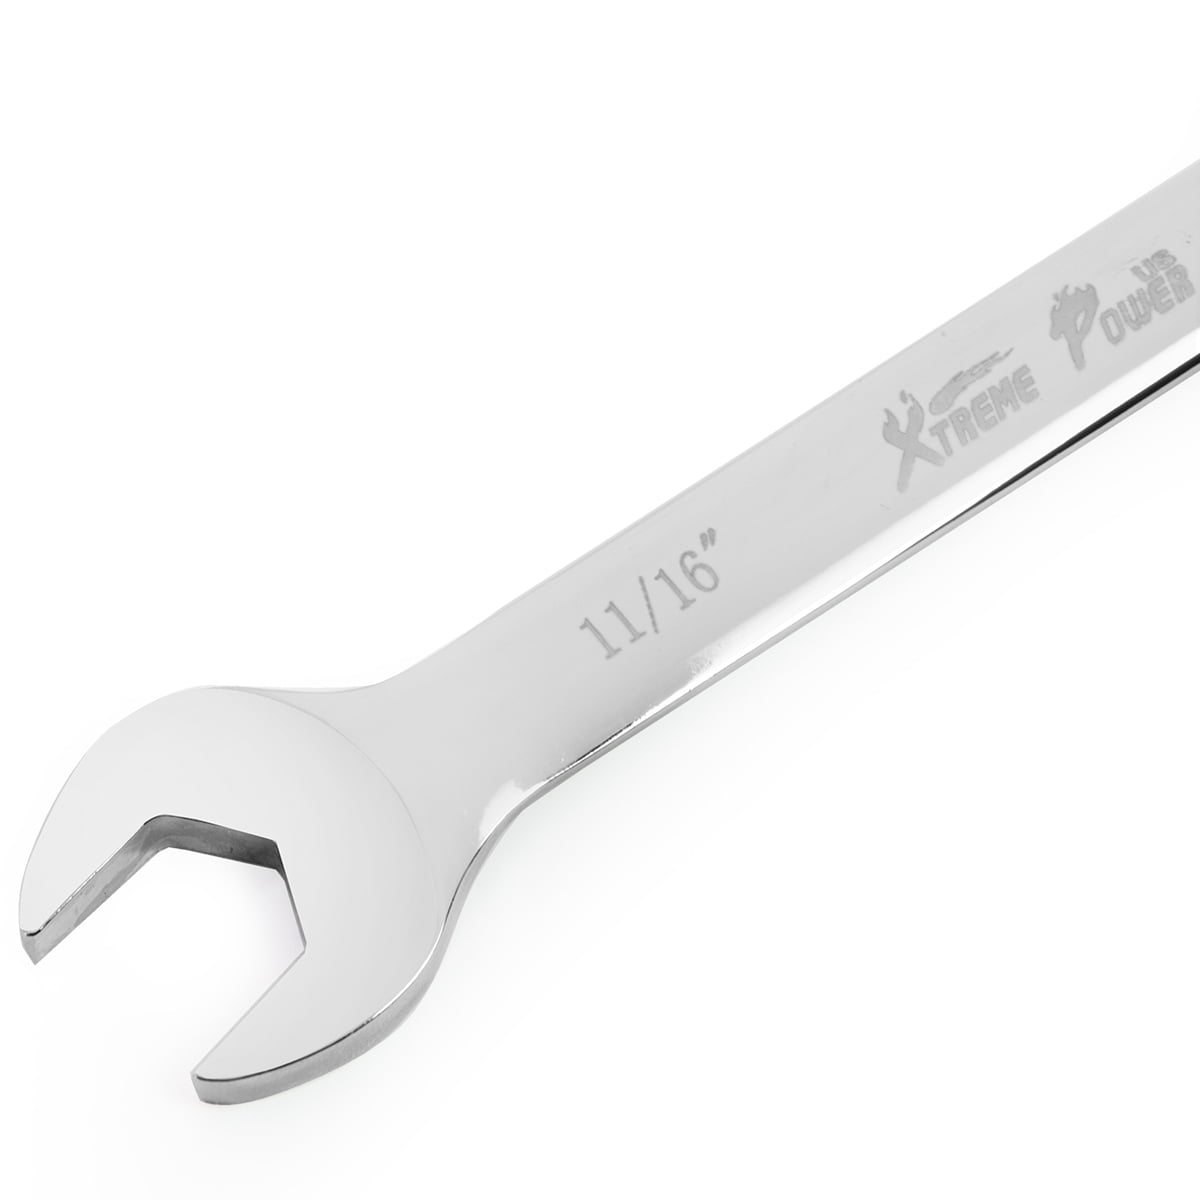 PROTO J127022 Combination Wrench Flex 11/16 12pt 1amh0 for sale online 